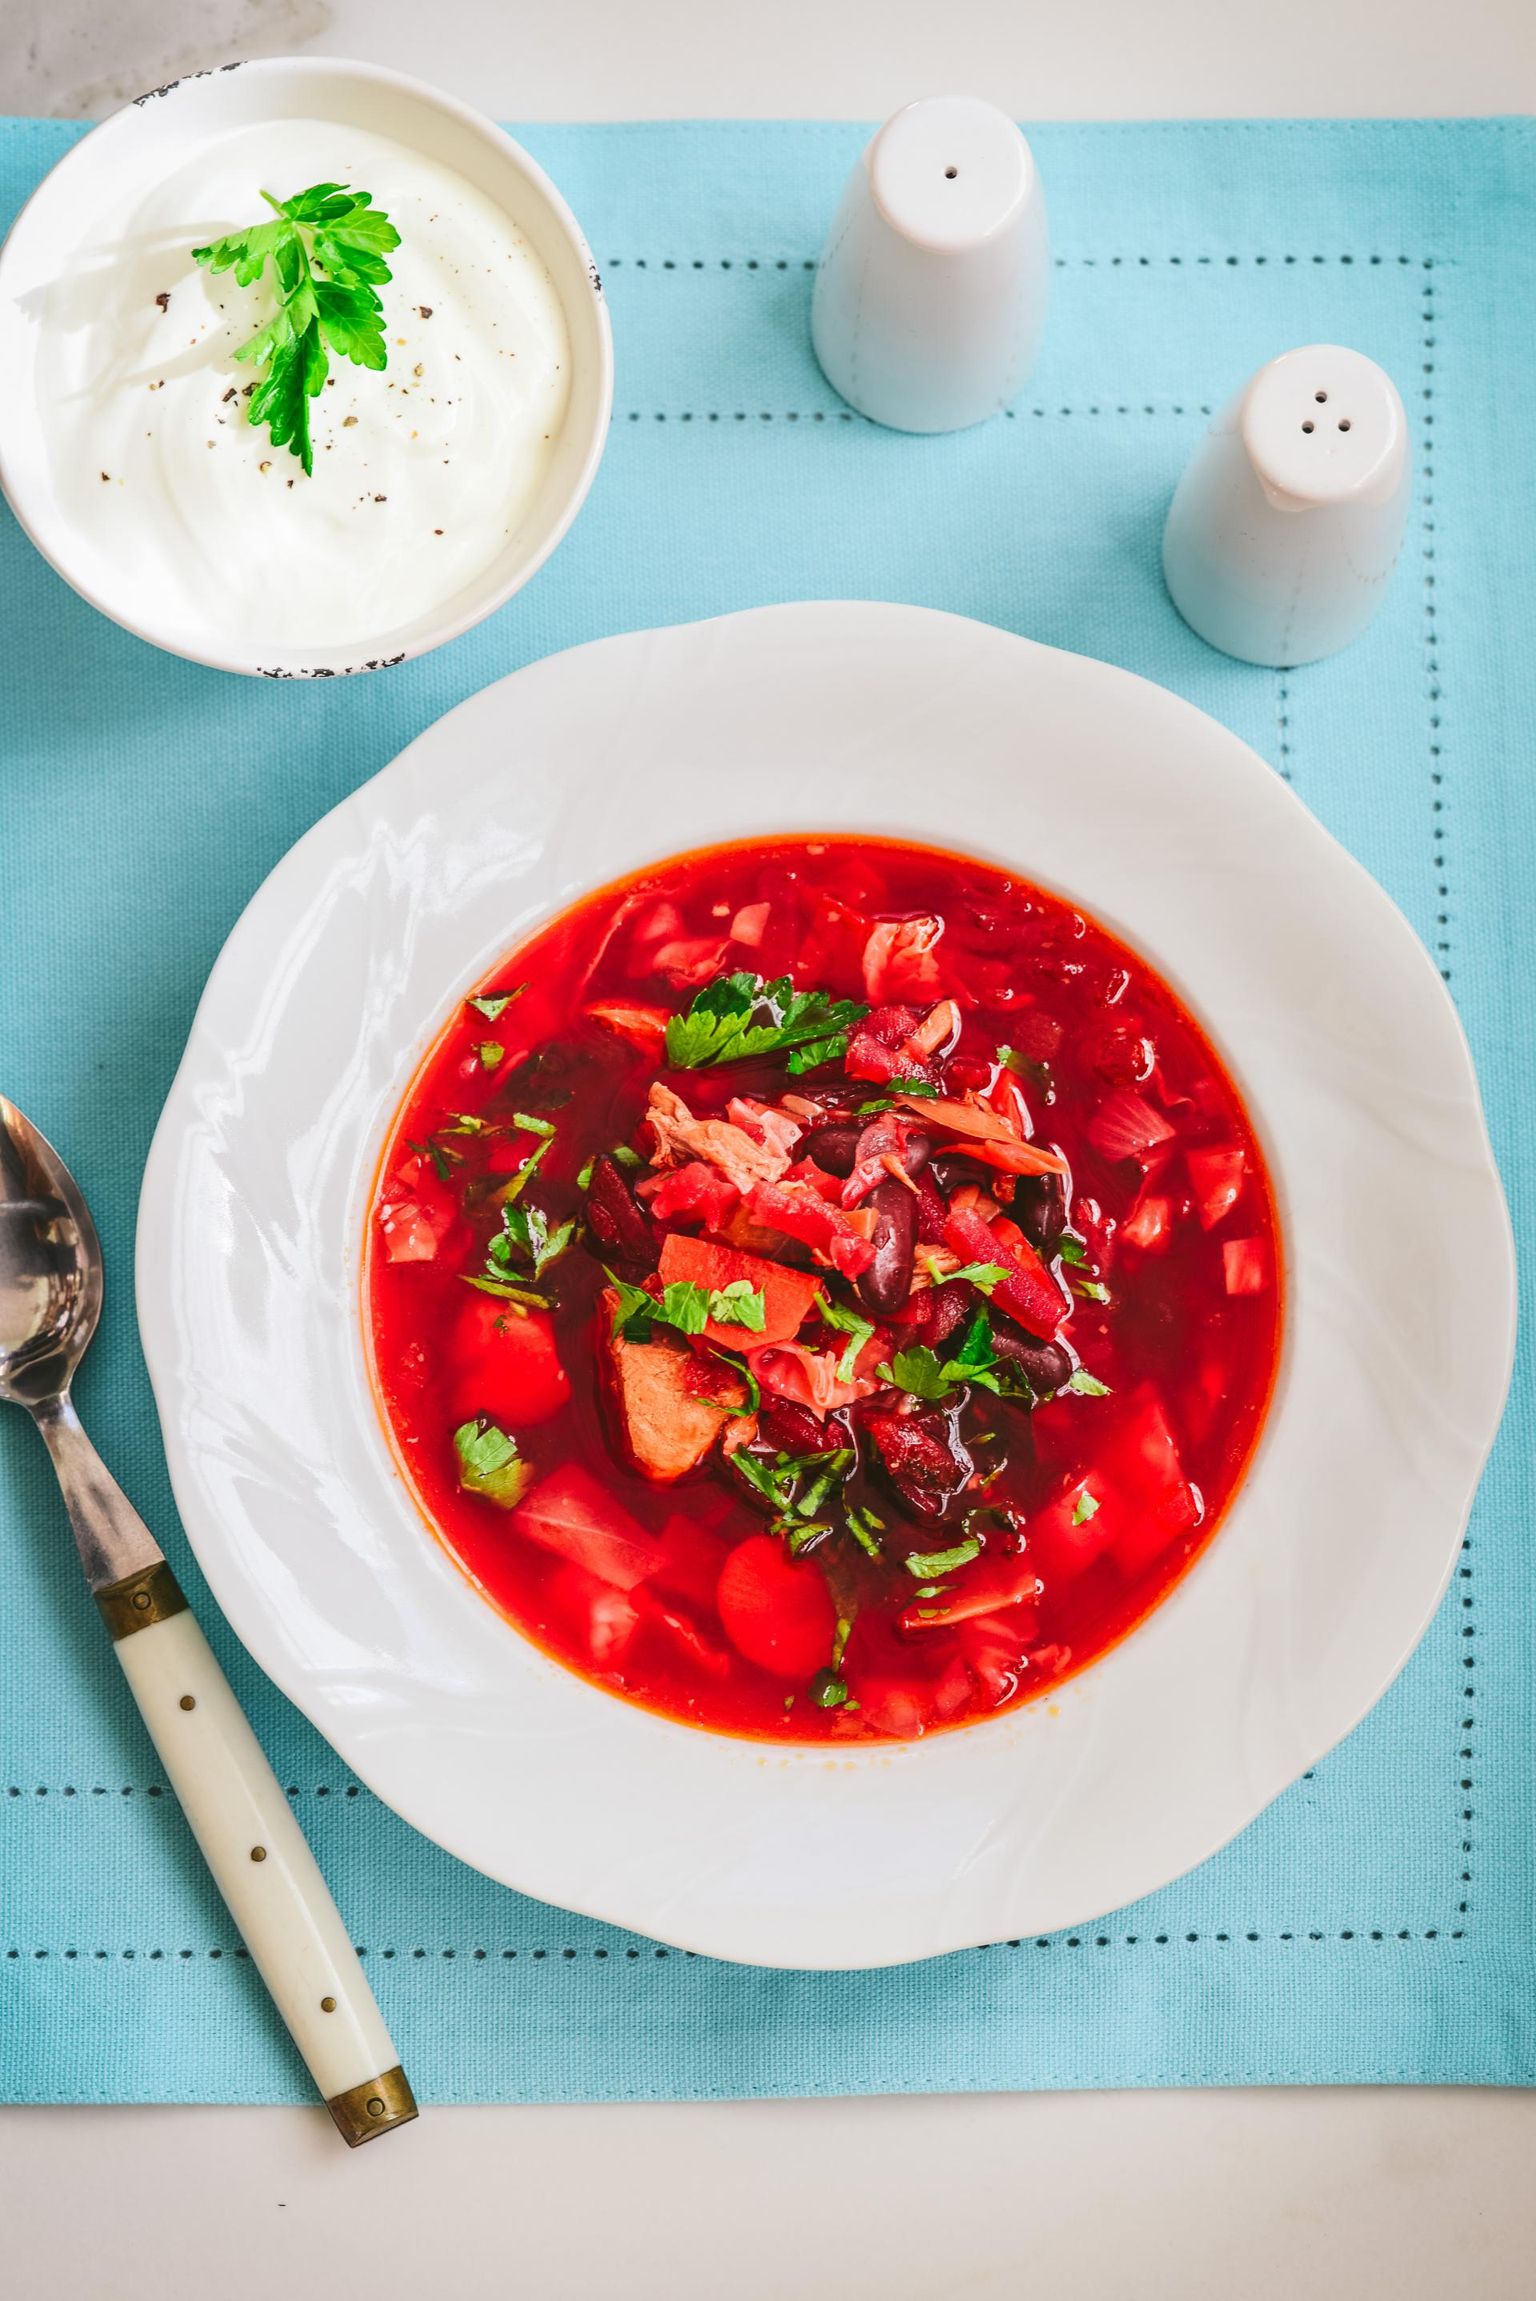 Ukrainas, kus igal piirkonnal ja majapidamisel on oma borši retsept, leidub sellest supist sadu variante.